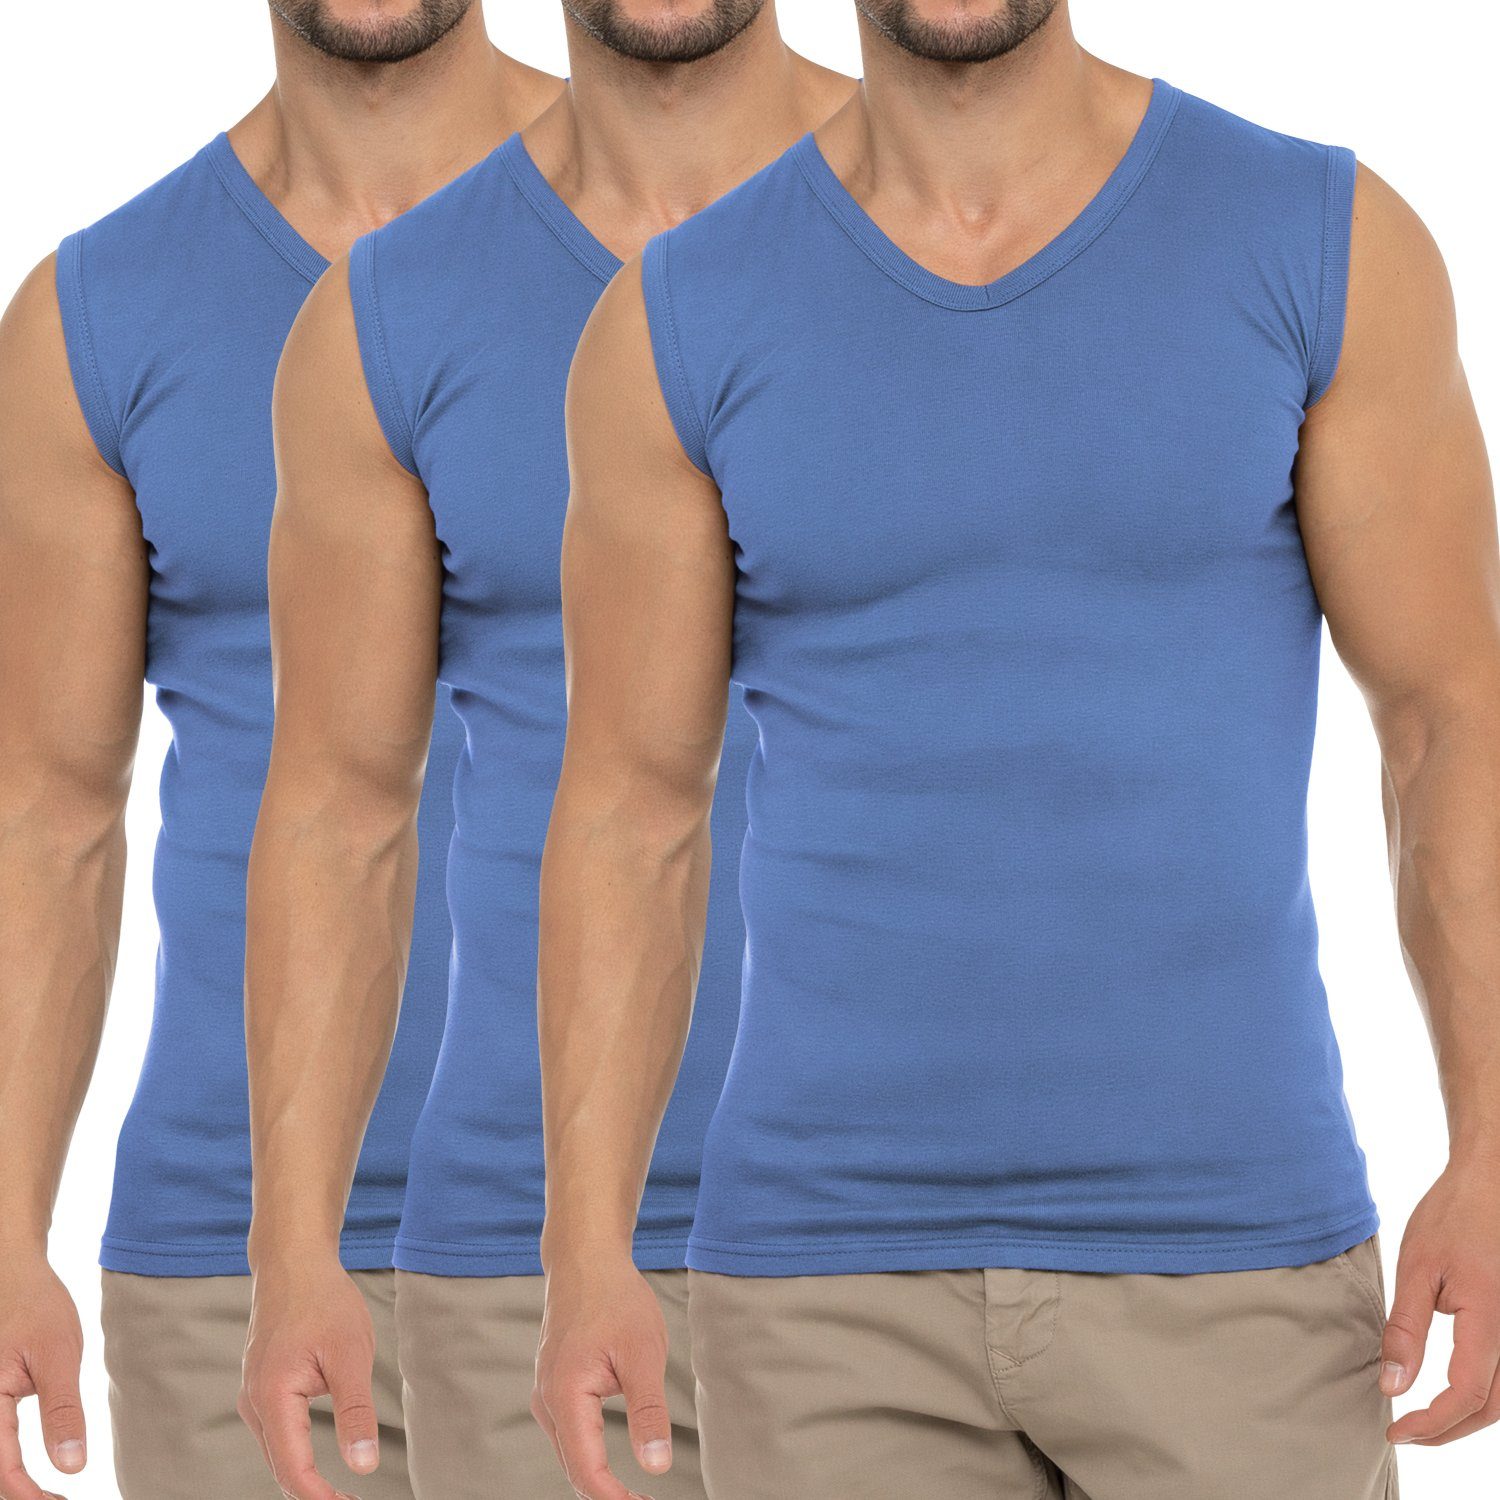 Herren Business Shirt Carolina Muscle Pack) (3er V-Neck Unterhemd Muskelshirt Blue celodoro